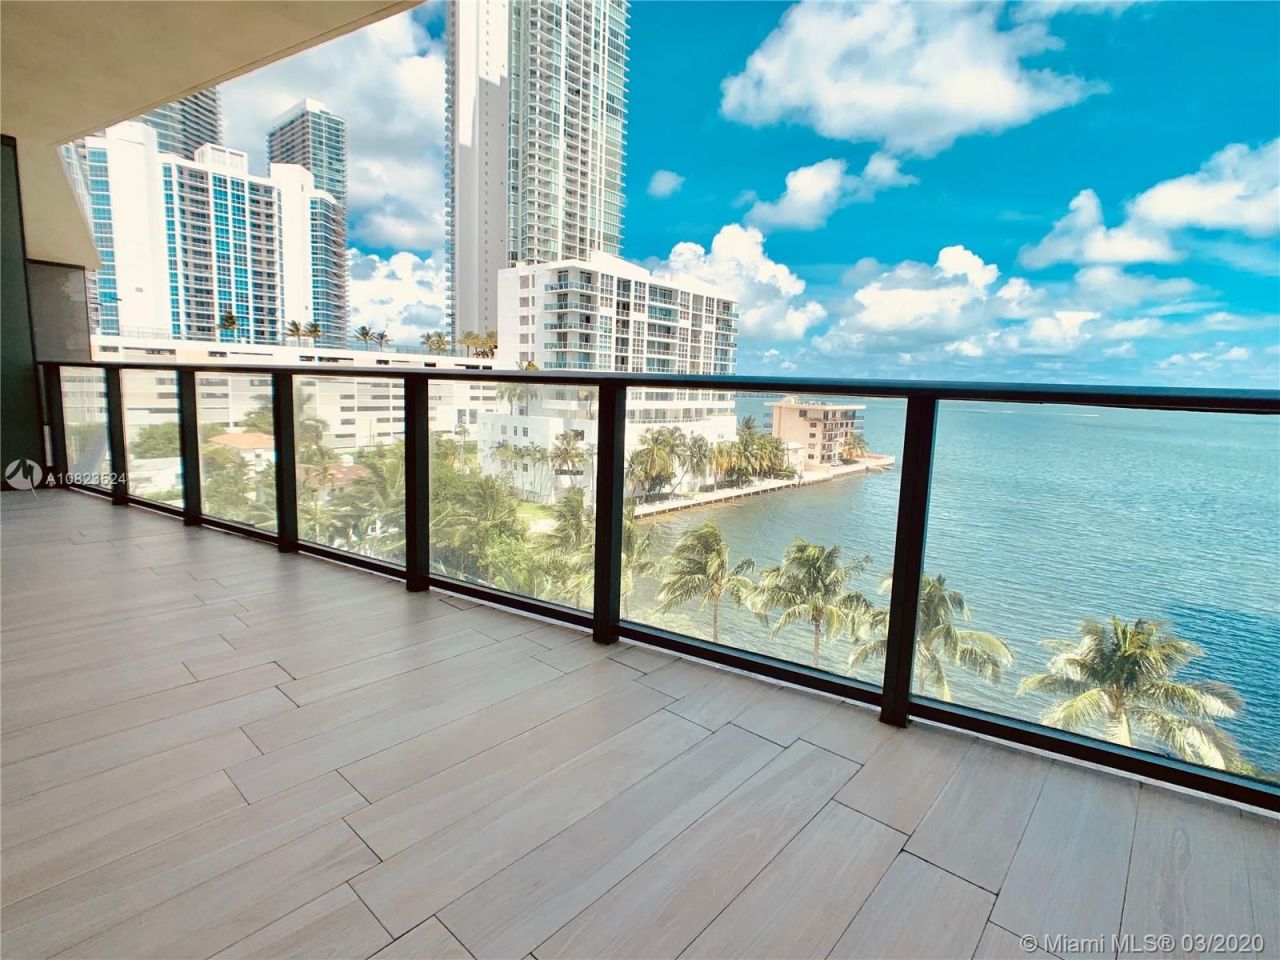 Flat in Miami, USA, 102 sq.m - picture 1